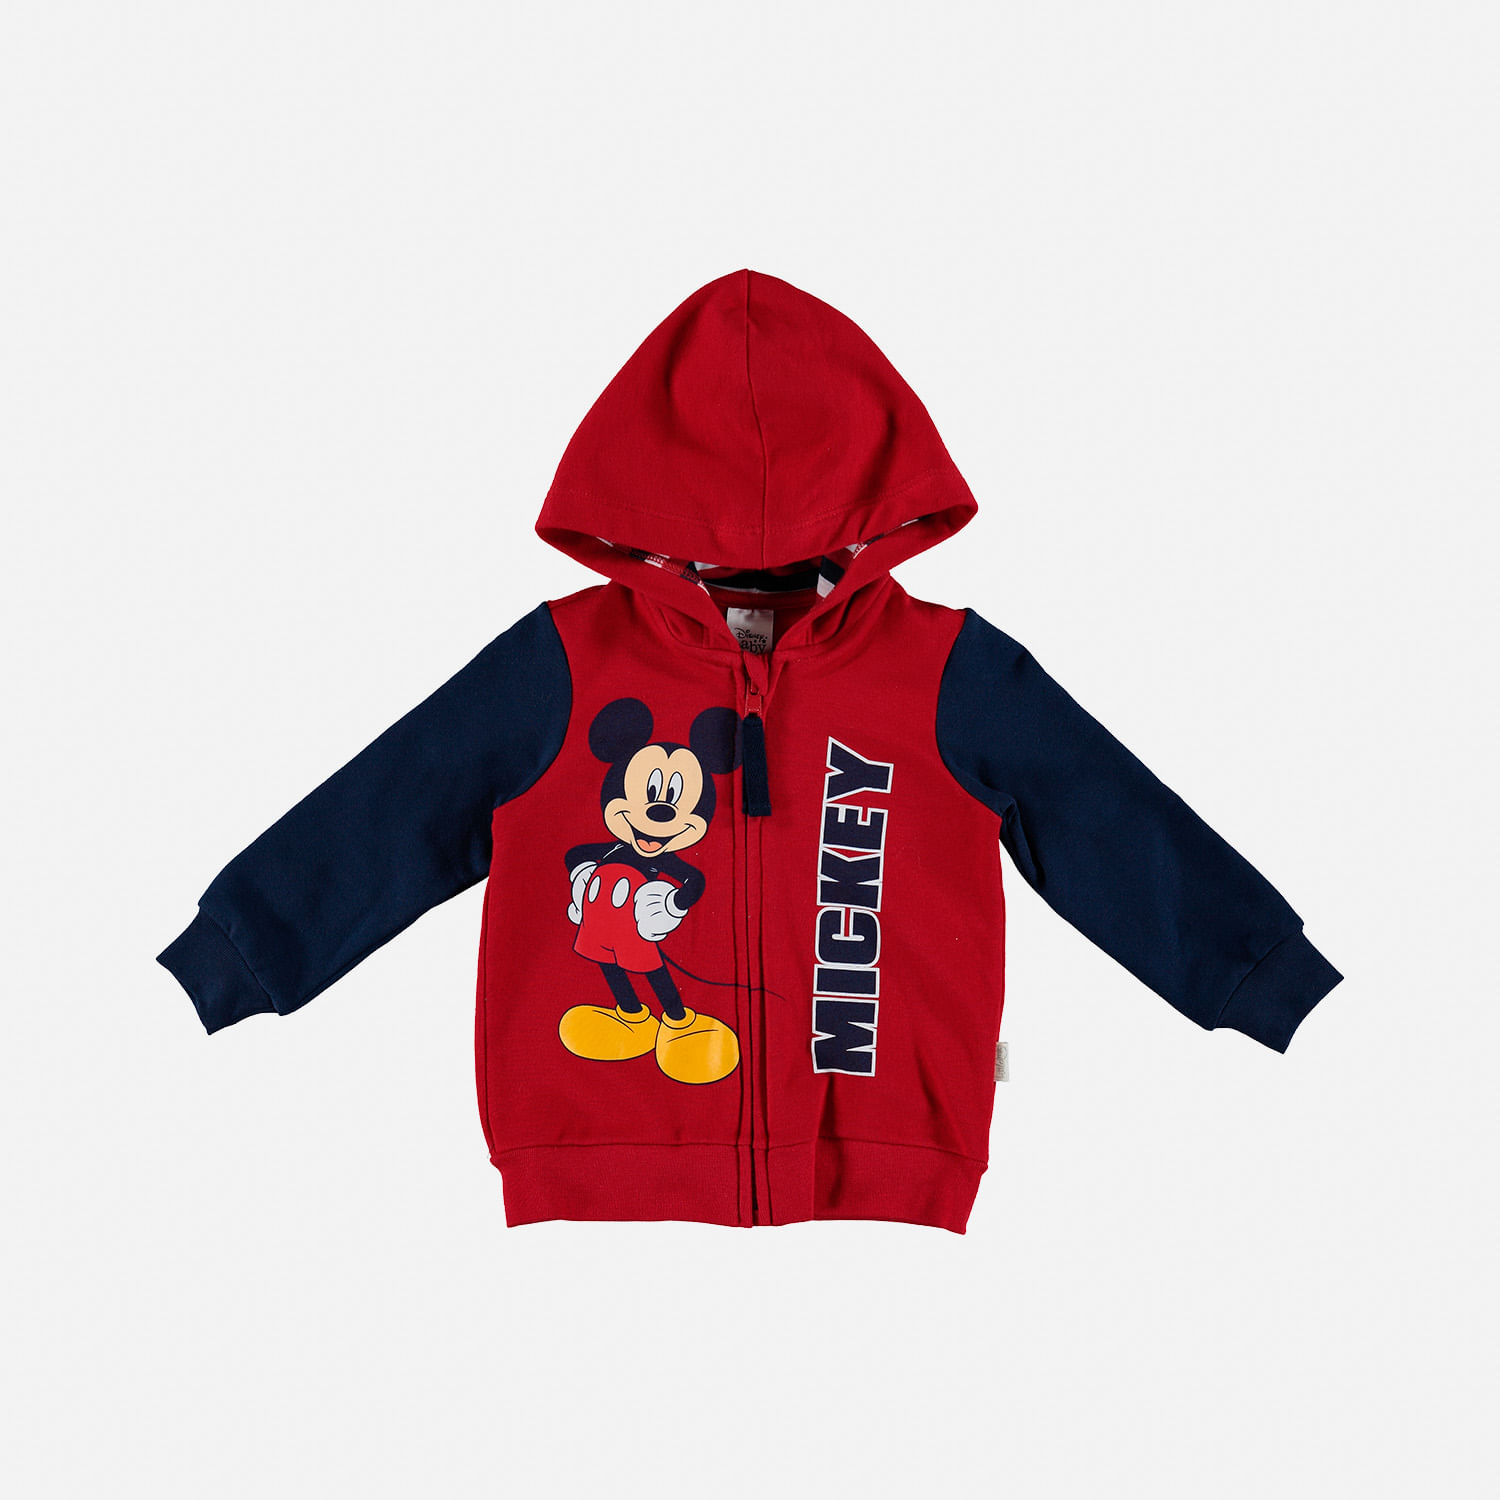 Buzo de Mickey Mouse rojo y oscuro con capucha para bebé niño